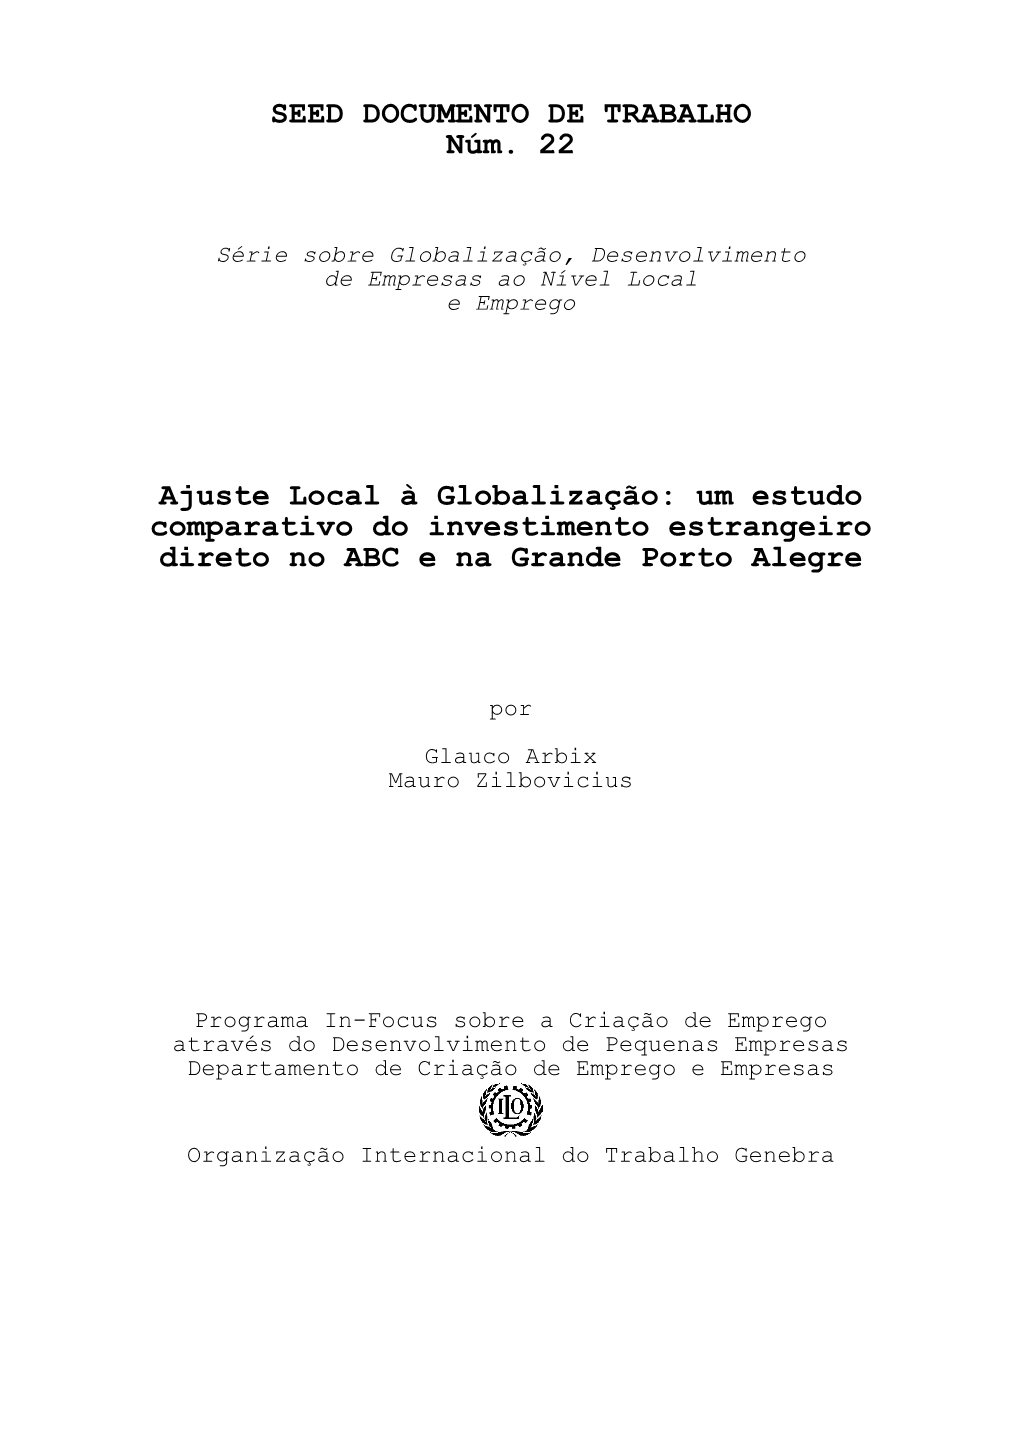 Um Estudo Comparativo Do Investimento Estrangeiro Direto No ABC E Na Grande Porto Alegre